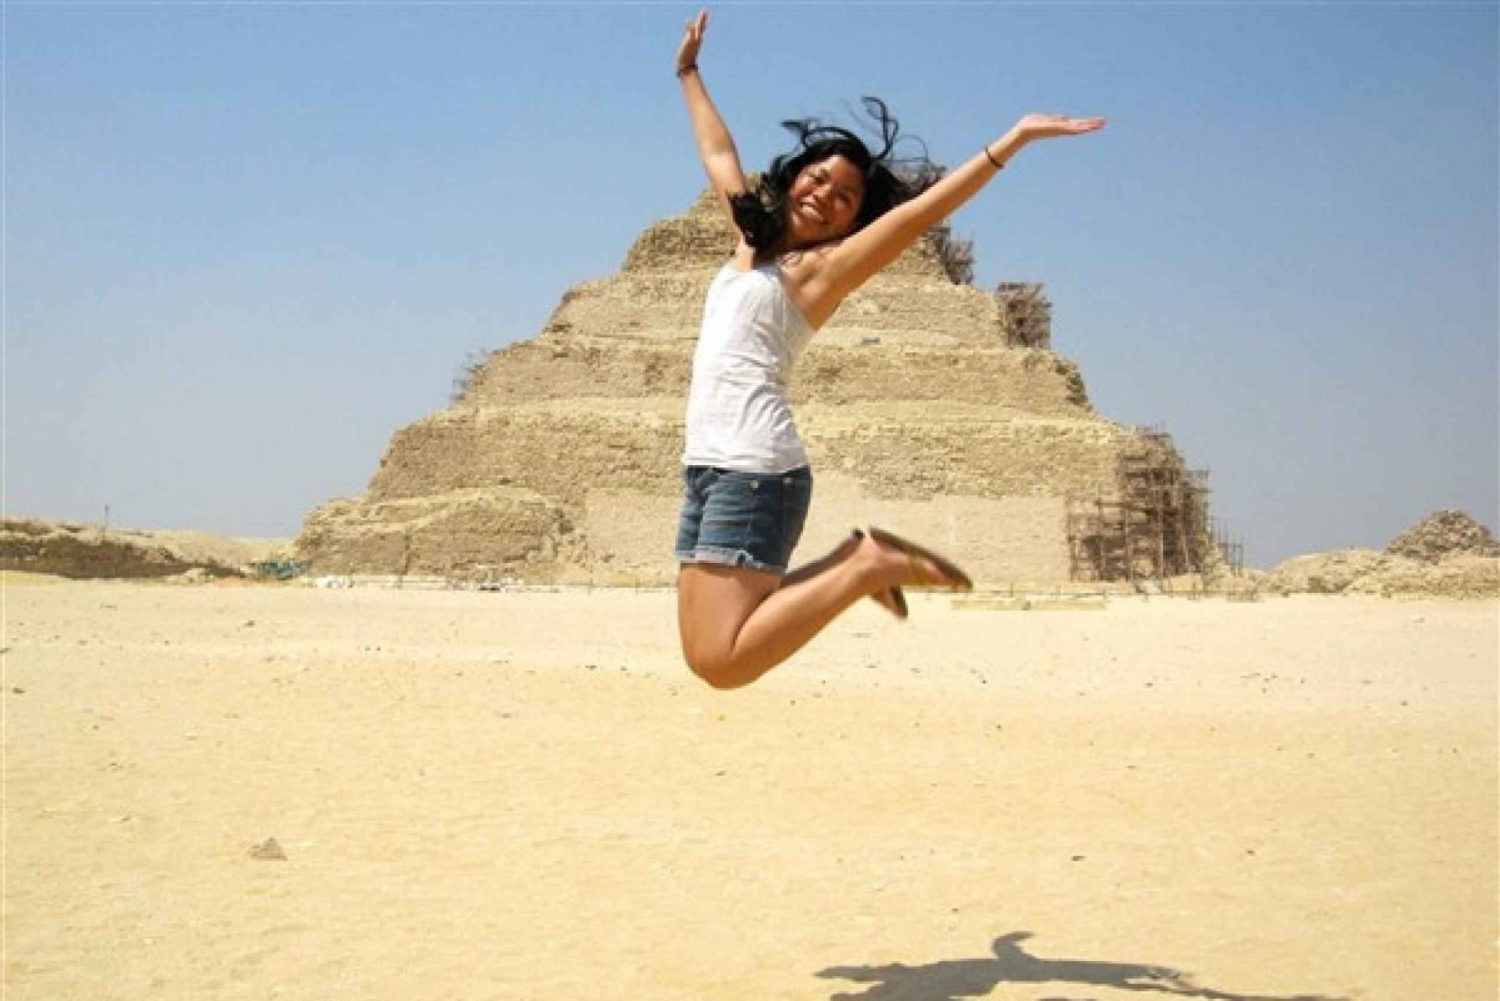 Kairo: Pyramiden, Sakkara & Memphis Private Tour mit Mittagessen